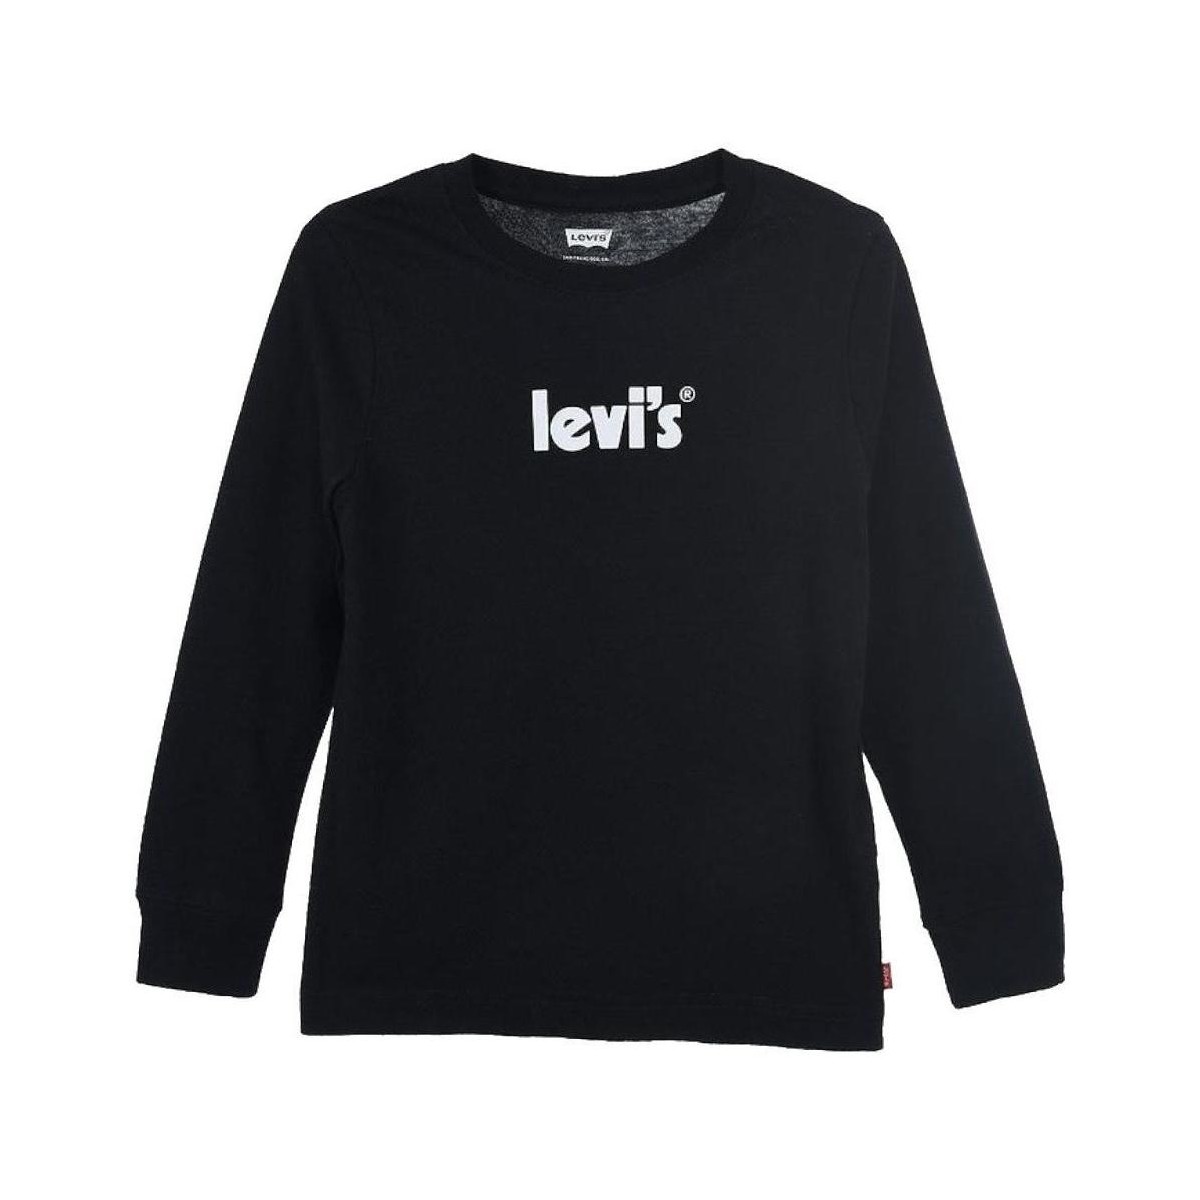 vaatteet Pojat Lyhythihainen t-paita Levi's  Musta